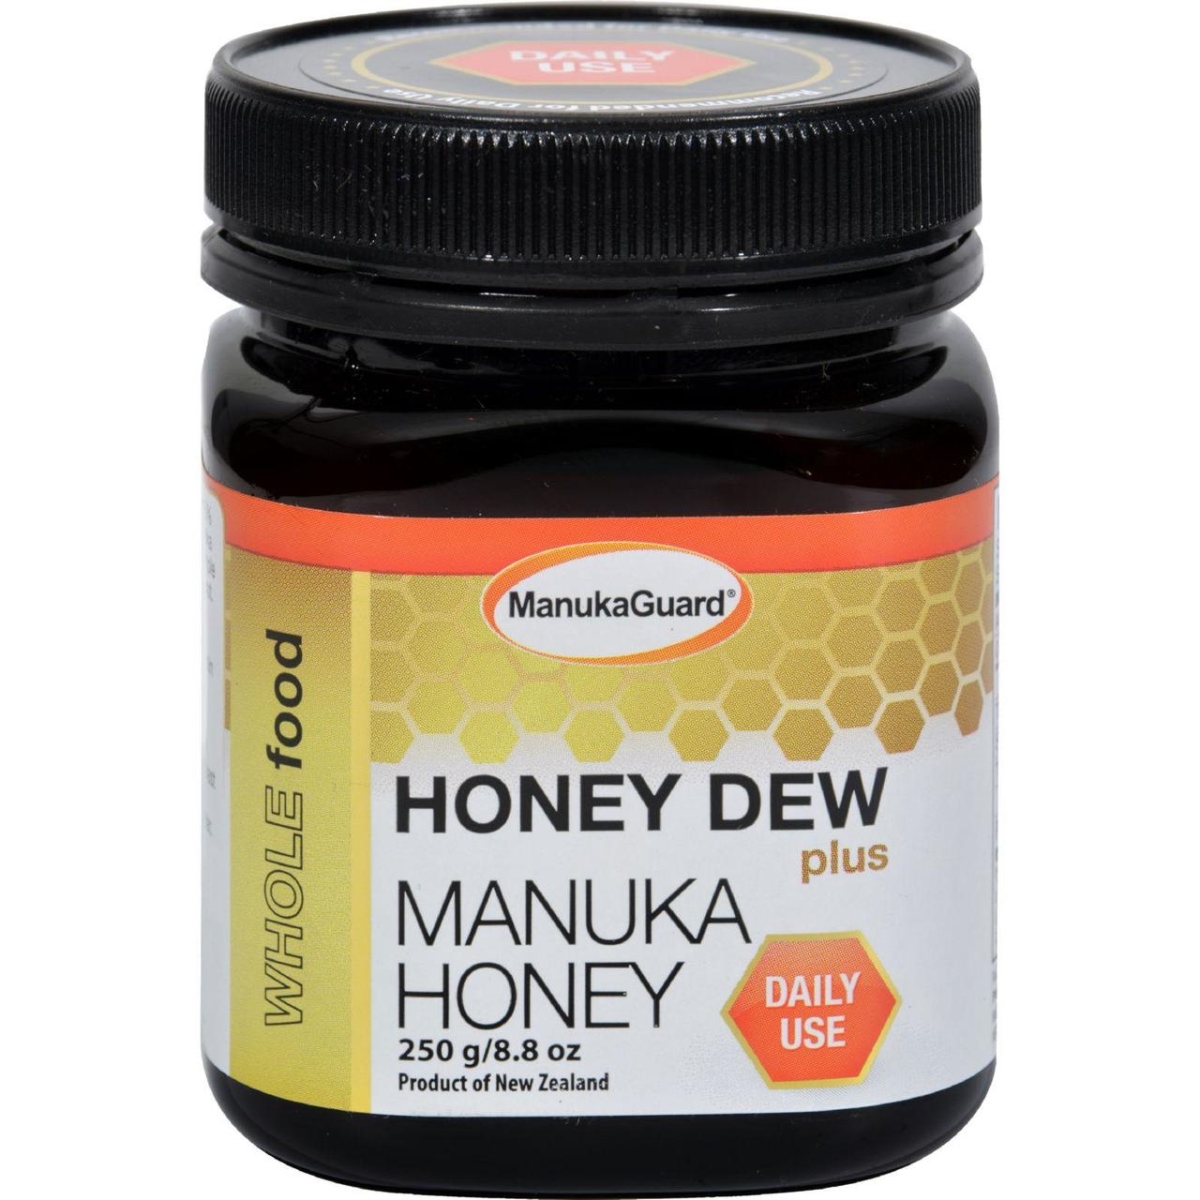 Manukaguard Hg1528876 8.8 Oz Manuka Honey - Honey Dew Plus